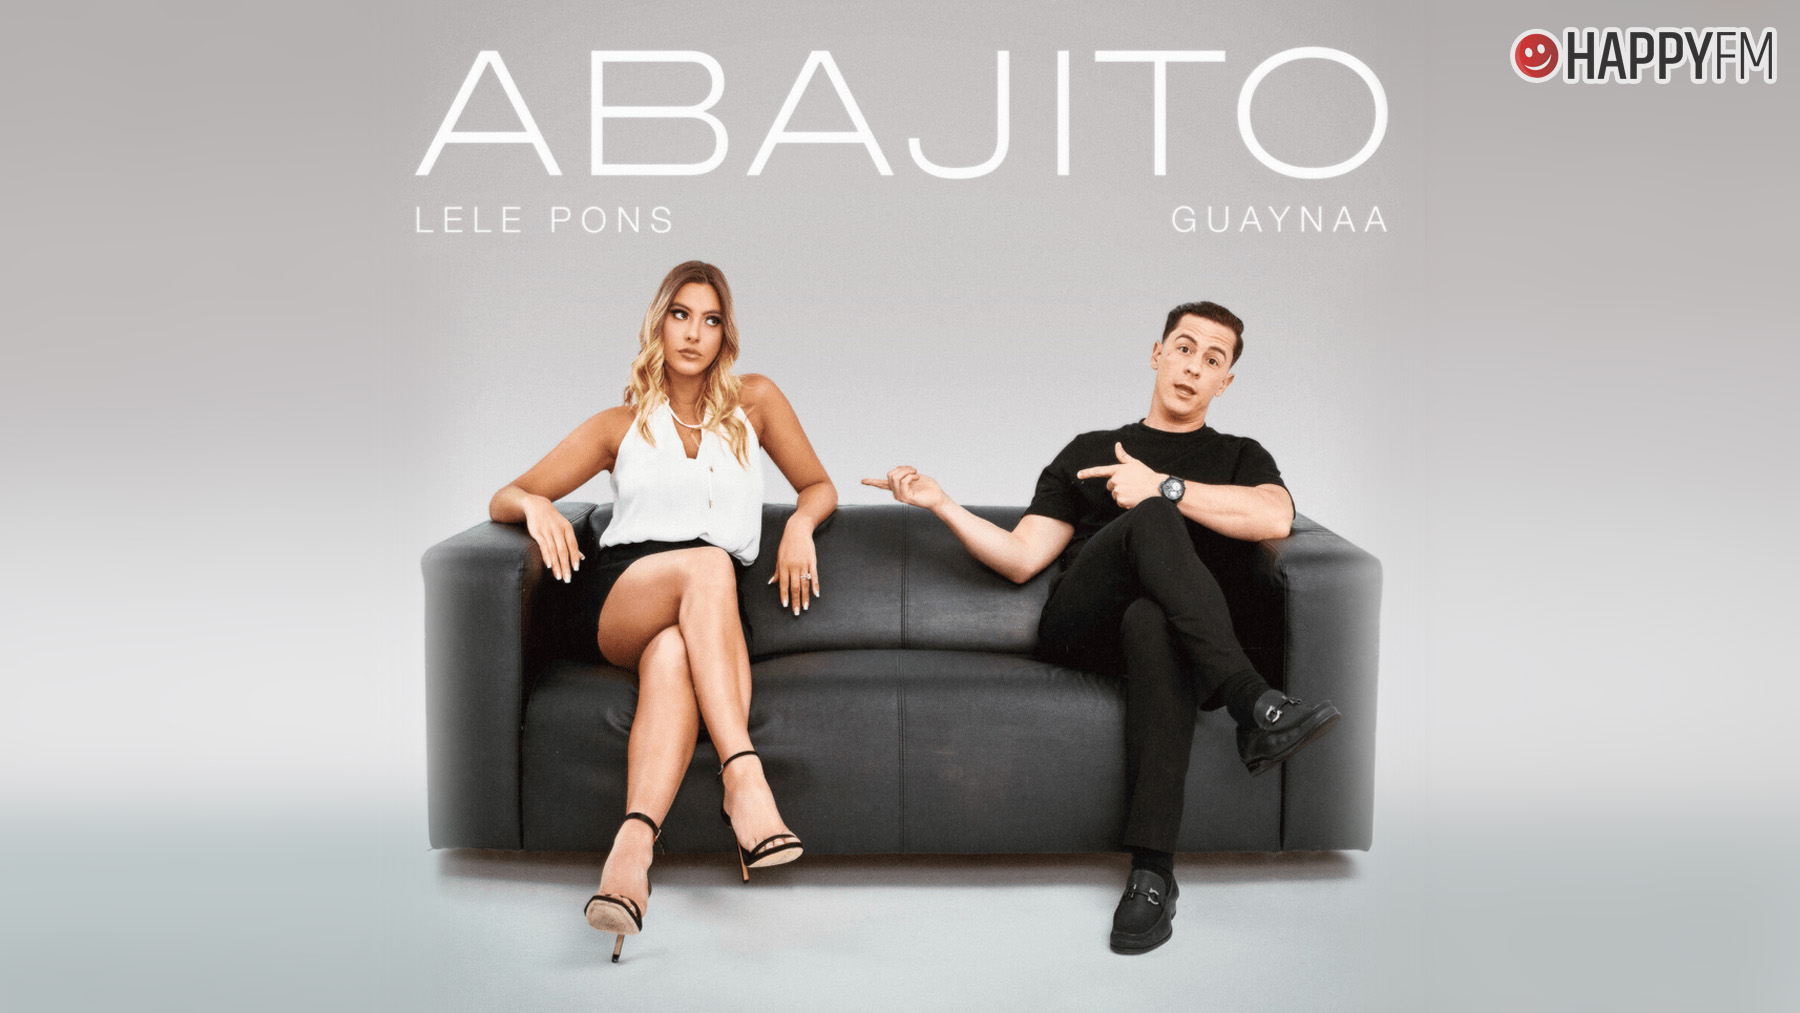 ‘Abajito’, de Lele Pons y Guaynaa: letra y vídeo